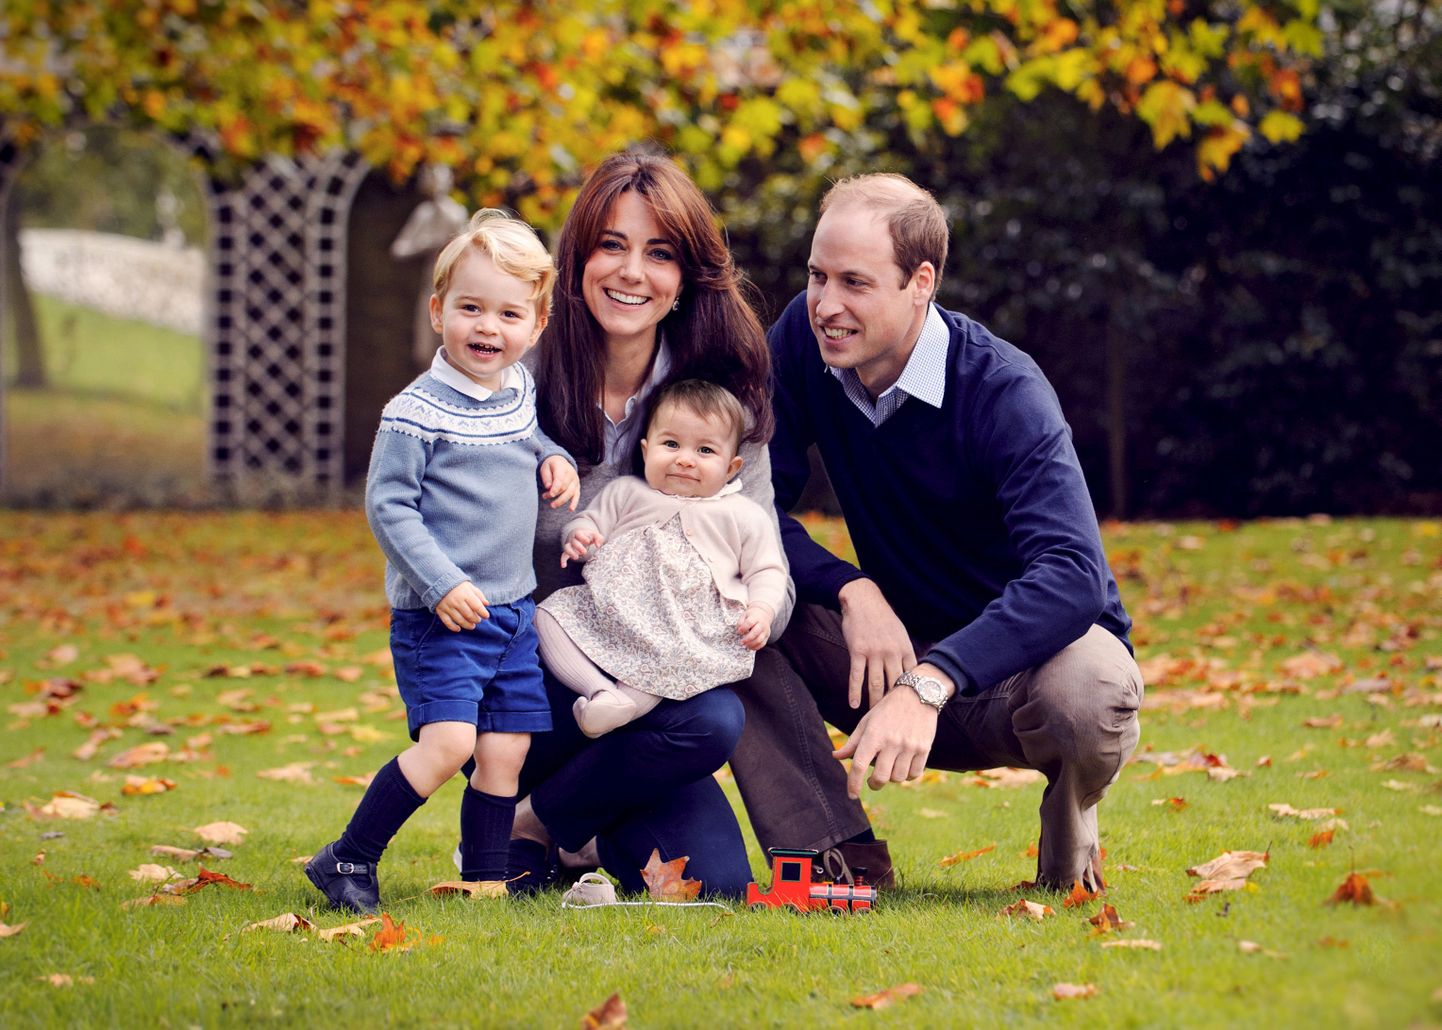 Cambridge'i hertsog William ja hertsoginna Catherine avalikustasid oma selleaastase perekondliku jõulukaardi